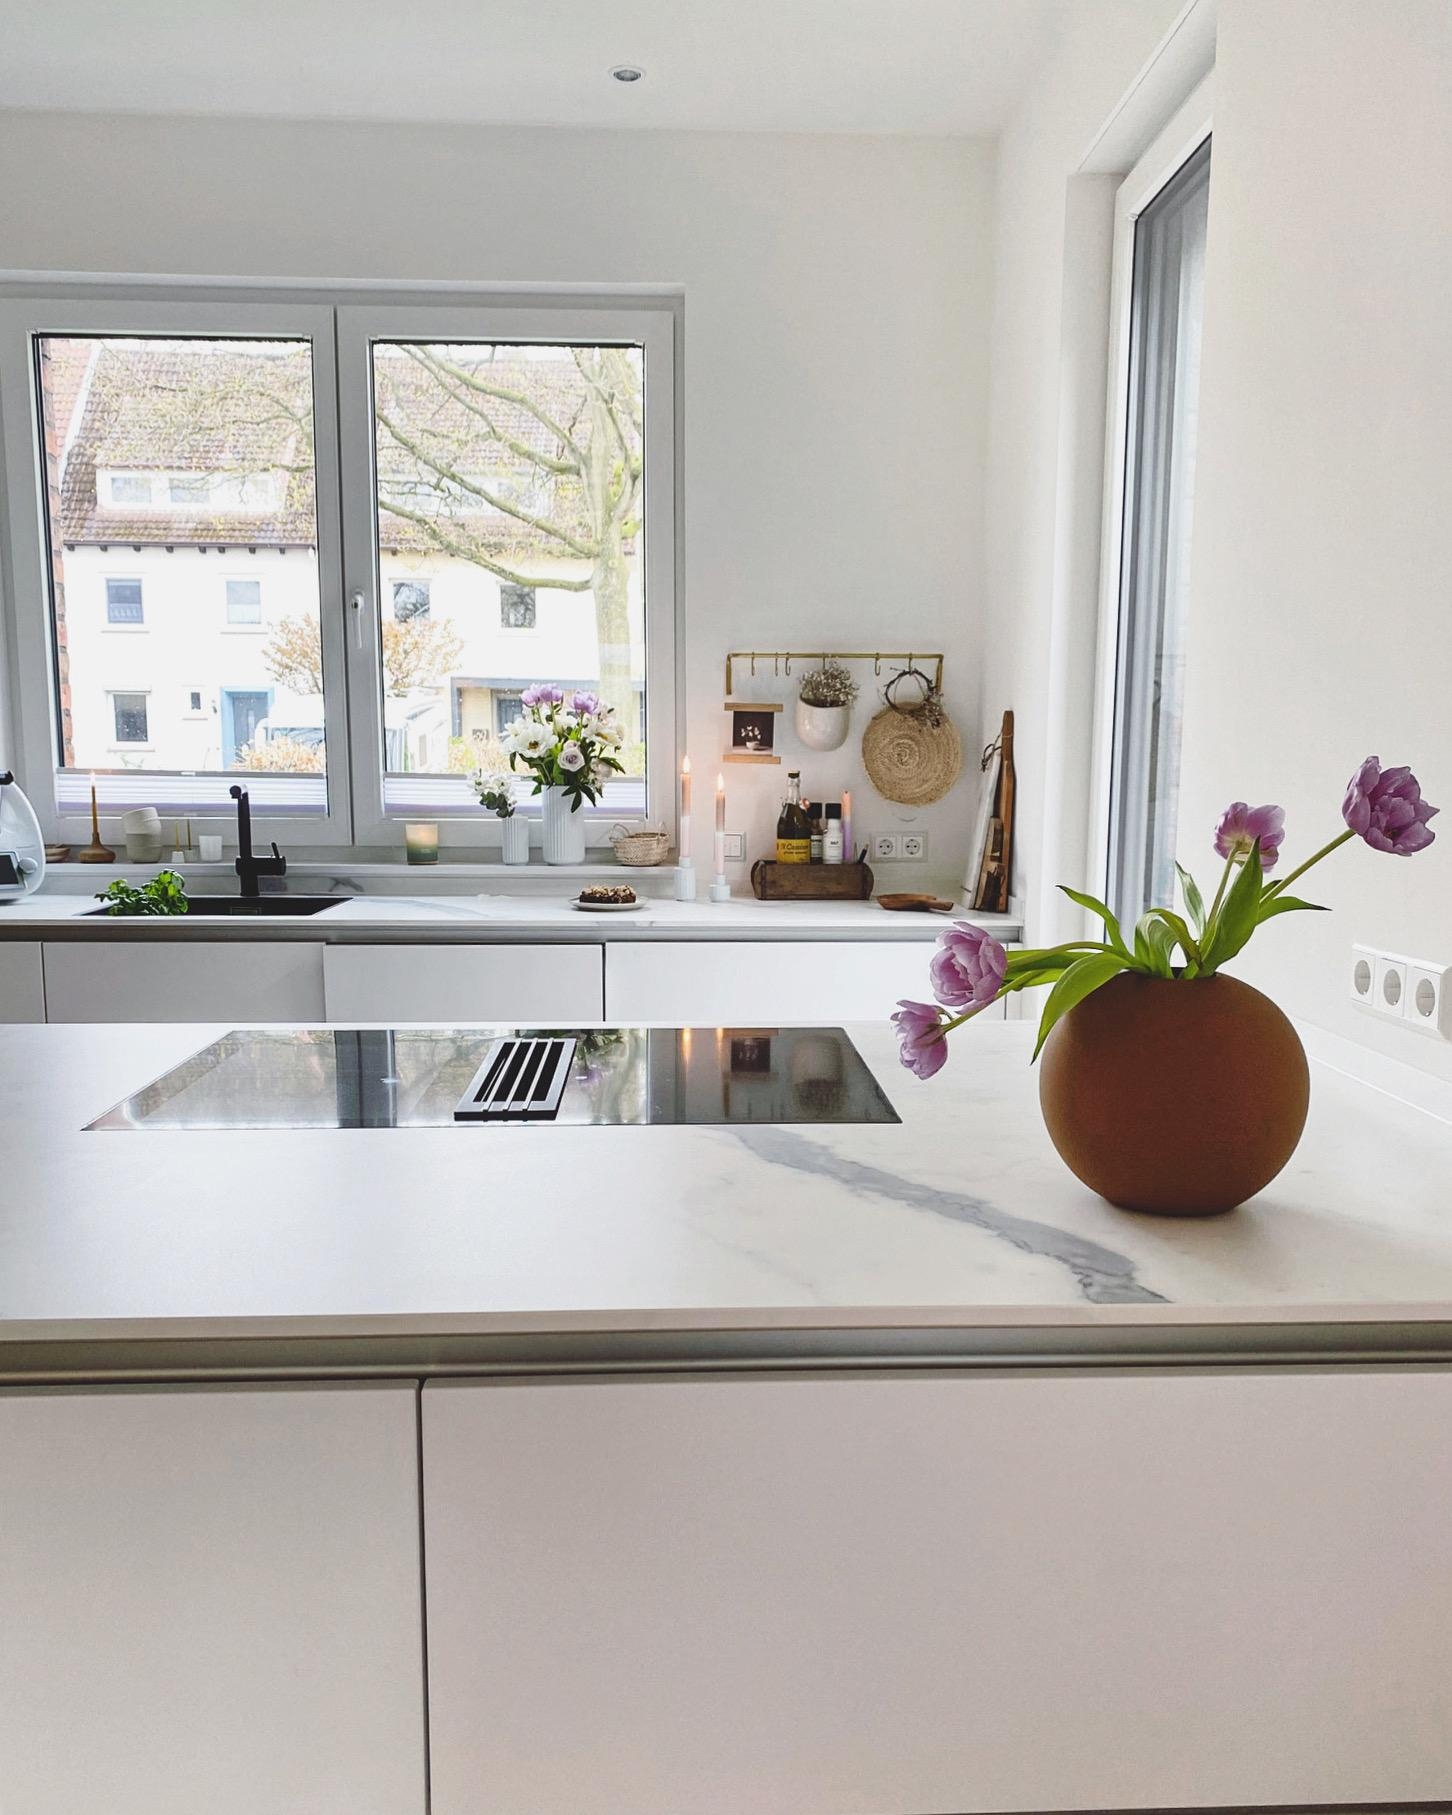 Hi from my kitchen 🤎
#küche#offeneküche#detailverliebt#couchliebt#interior#küchendetails